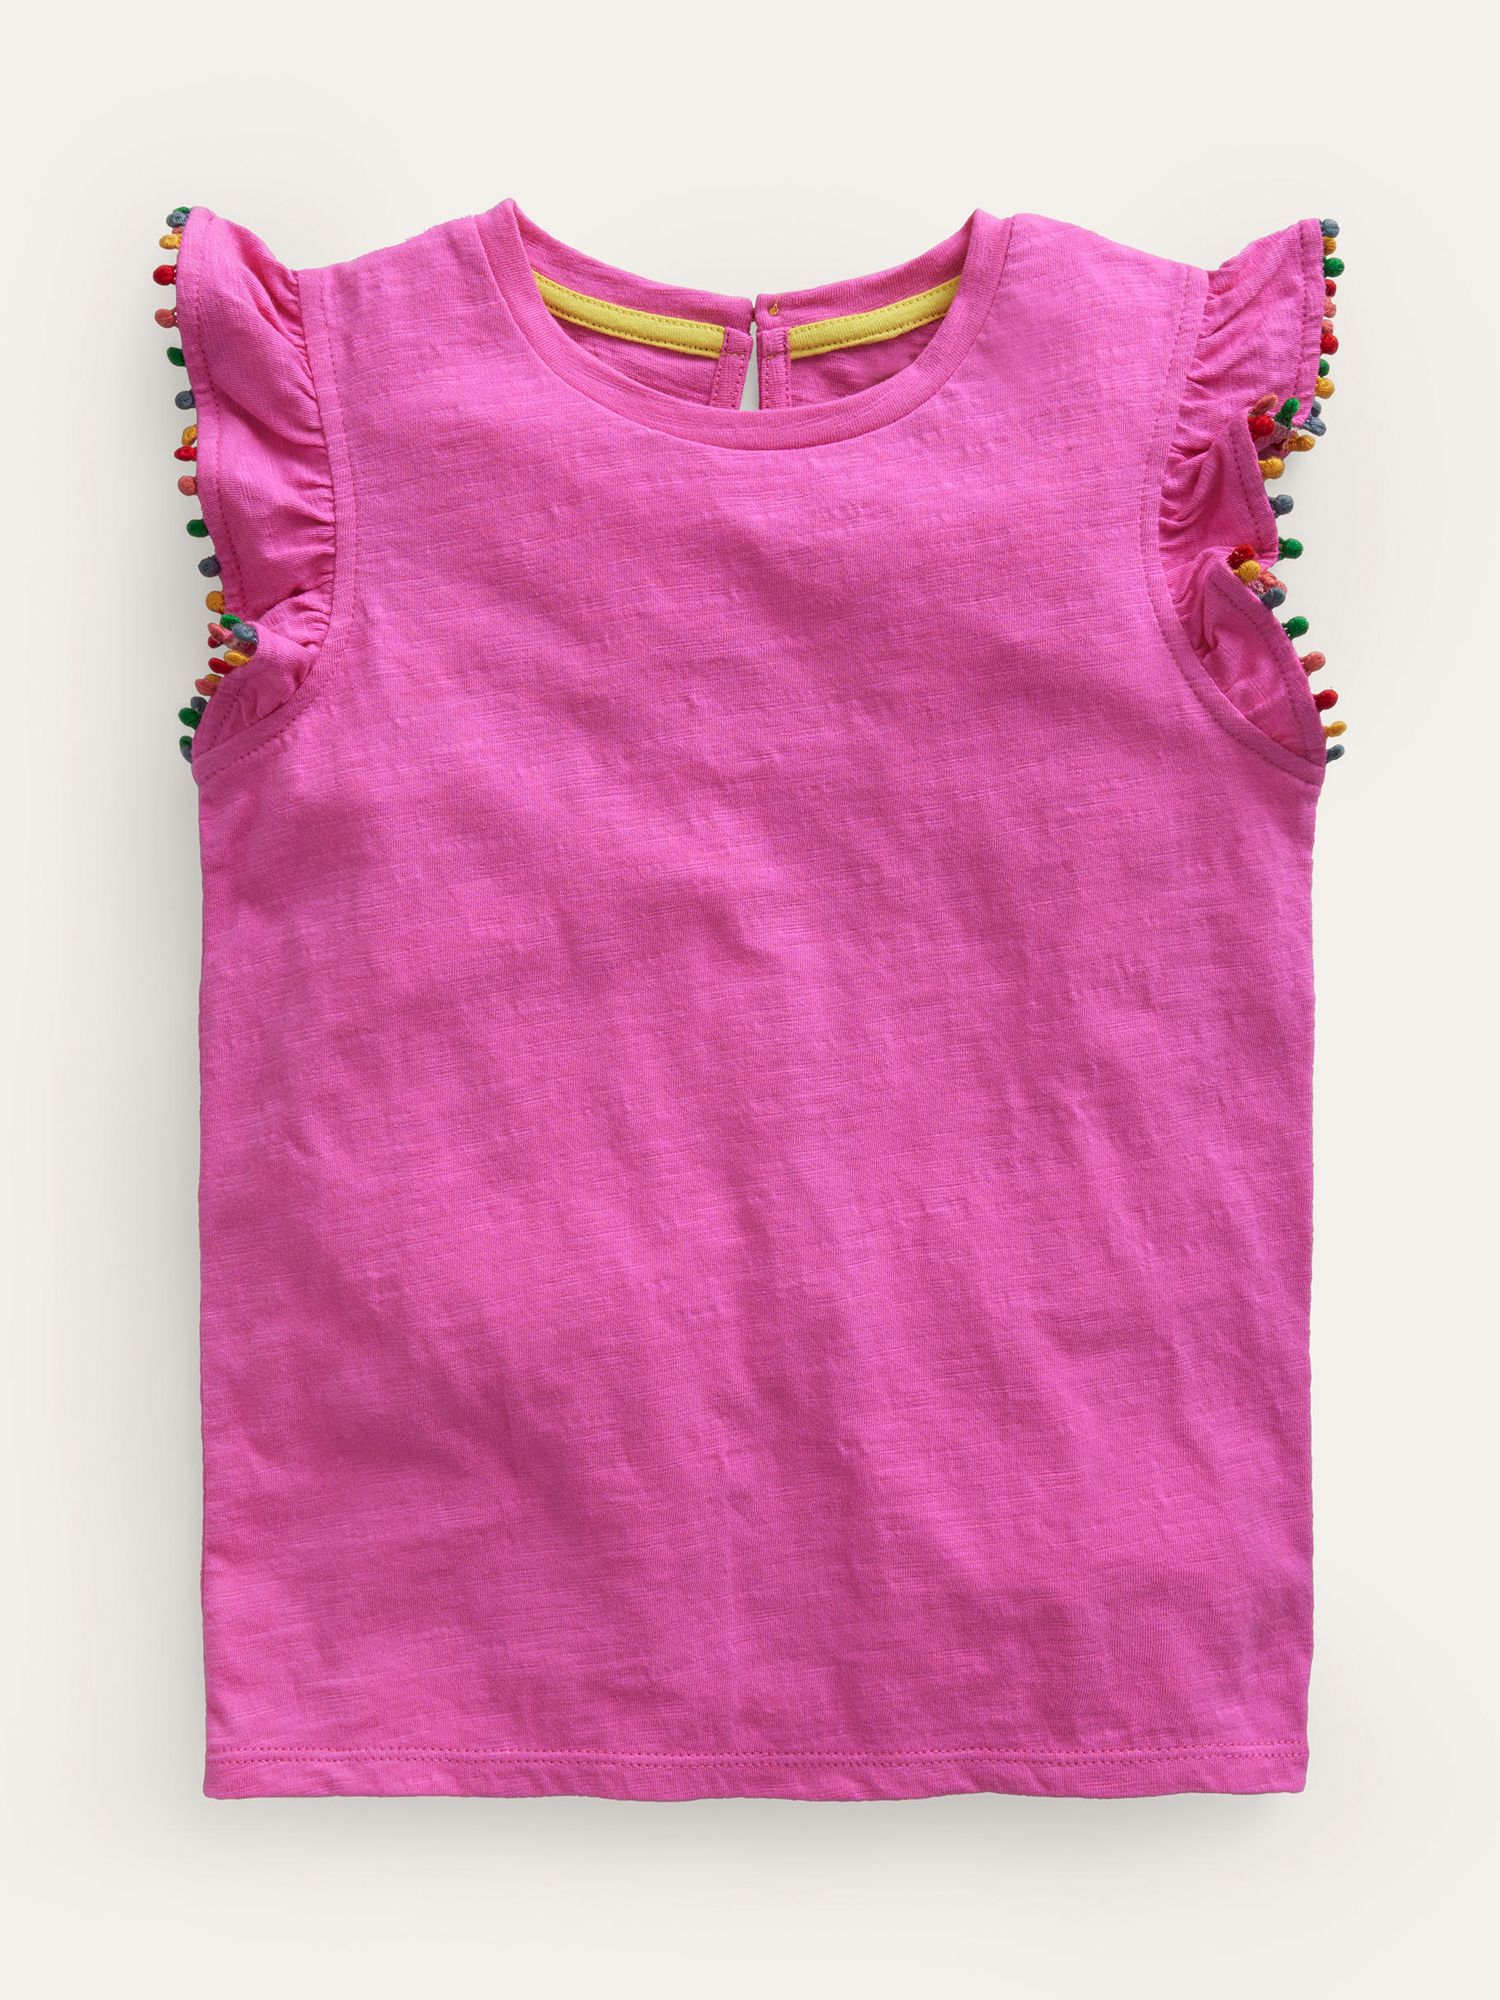 Mini Boden Kids' Pom Pom Trim T-Shirt, Strawberry Pink, 2-3 years